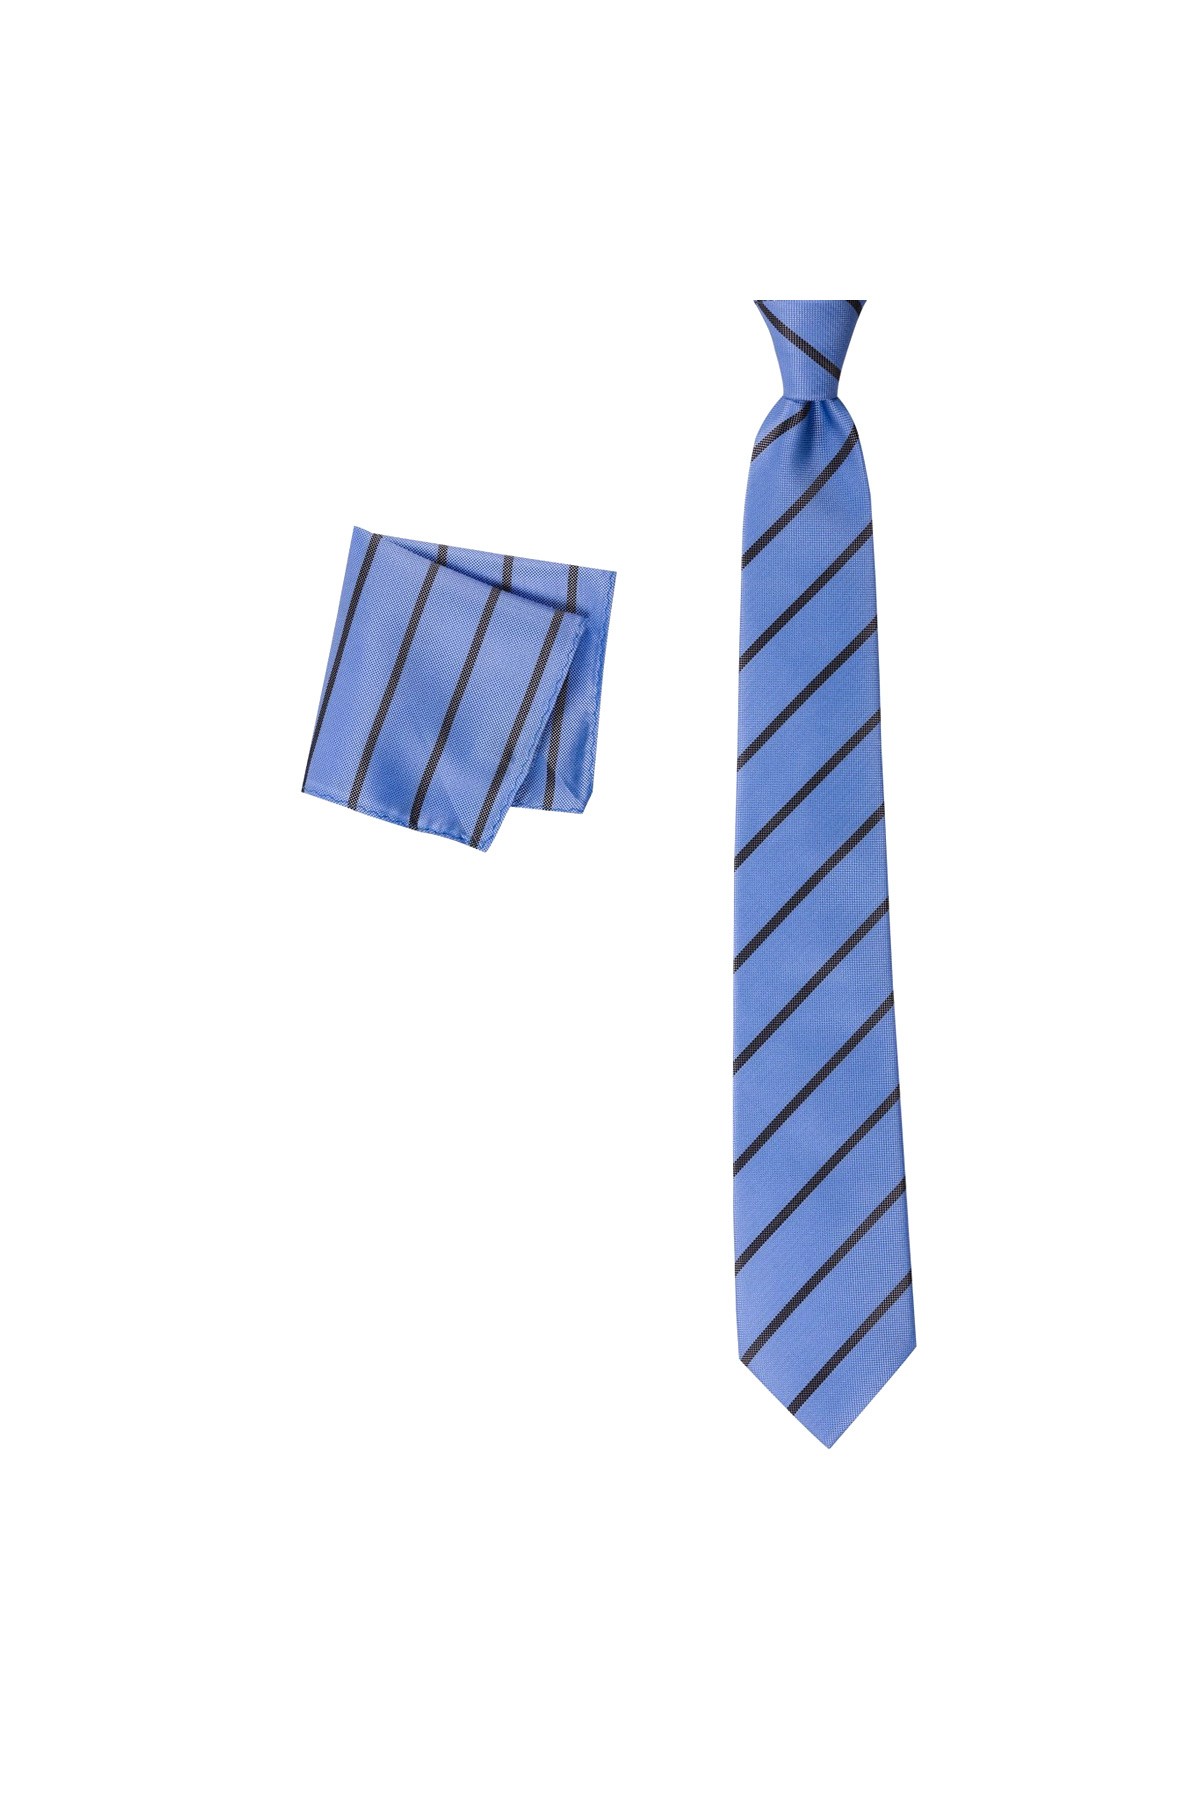 Klasik çizgili 8 cm genişliğinde mendilli kravat